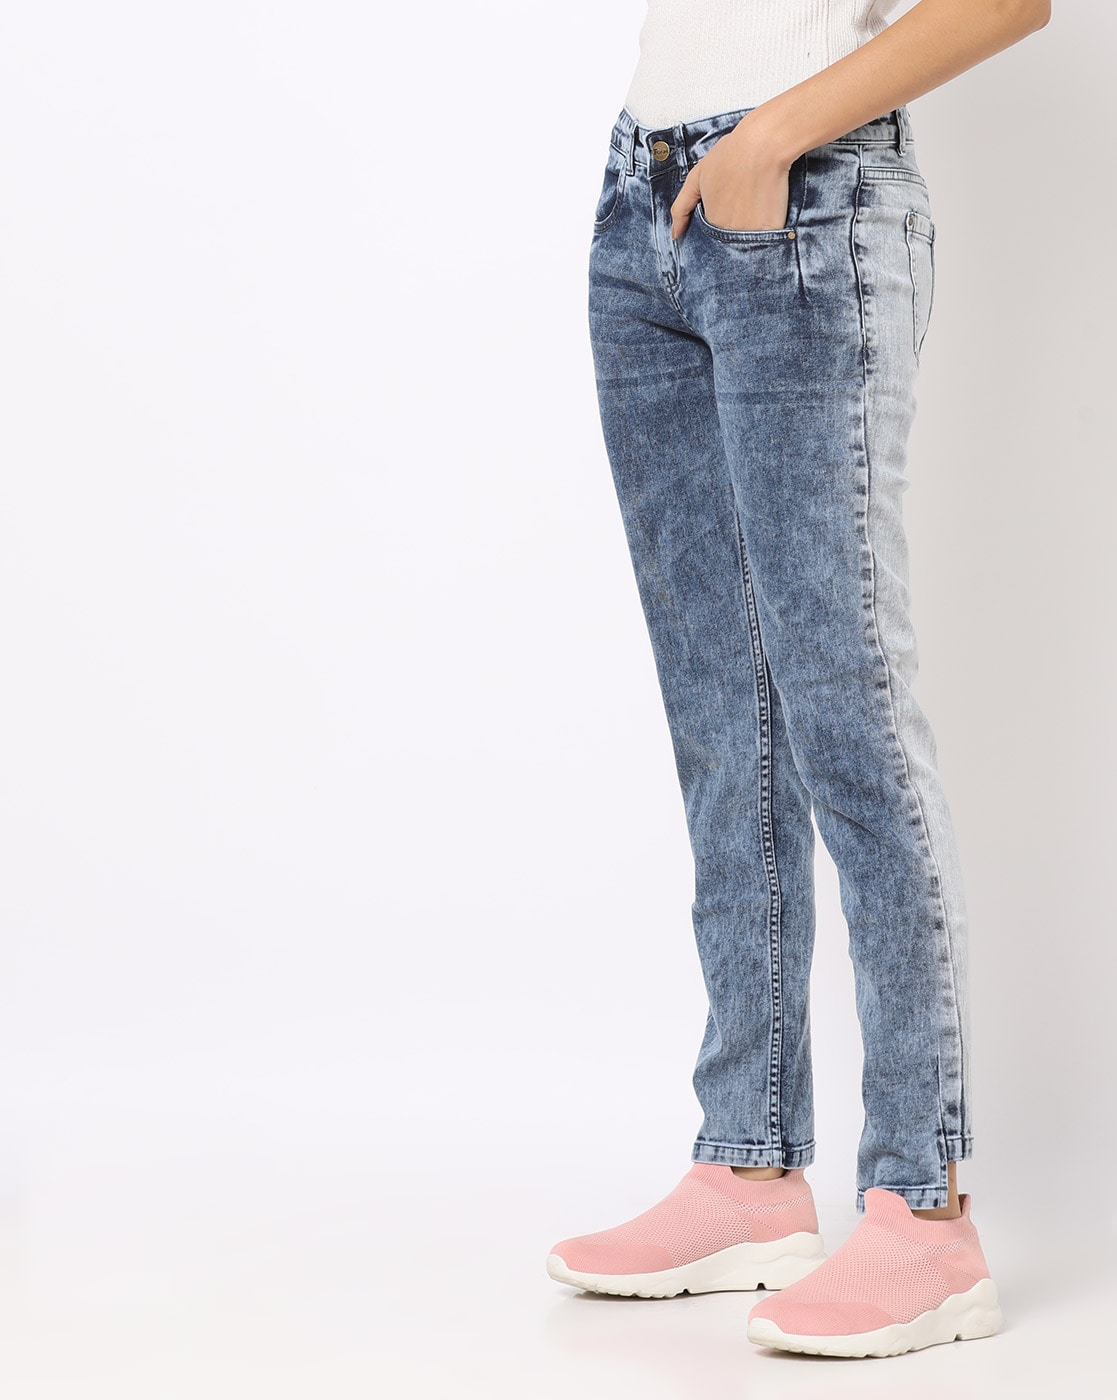 Buy Blue Jeans Jeggings For Women By Freakins Online Ajio Com